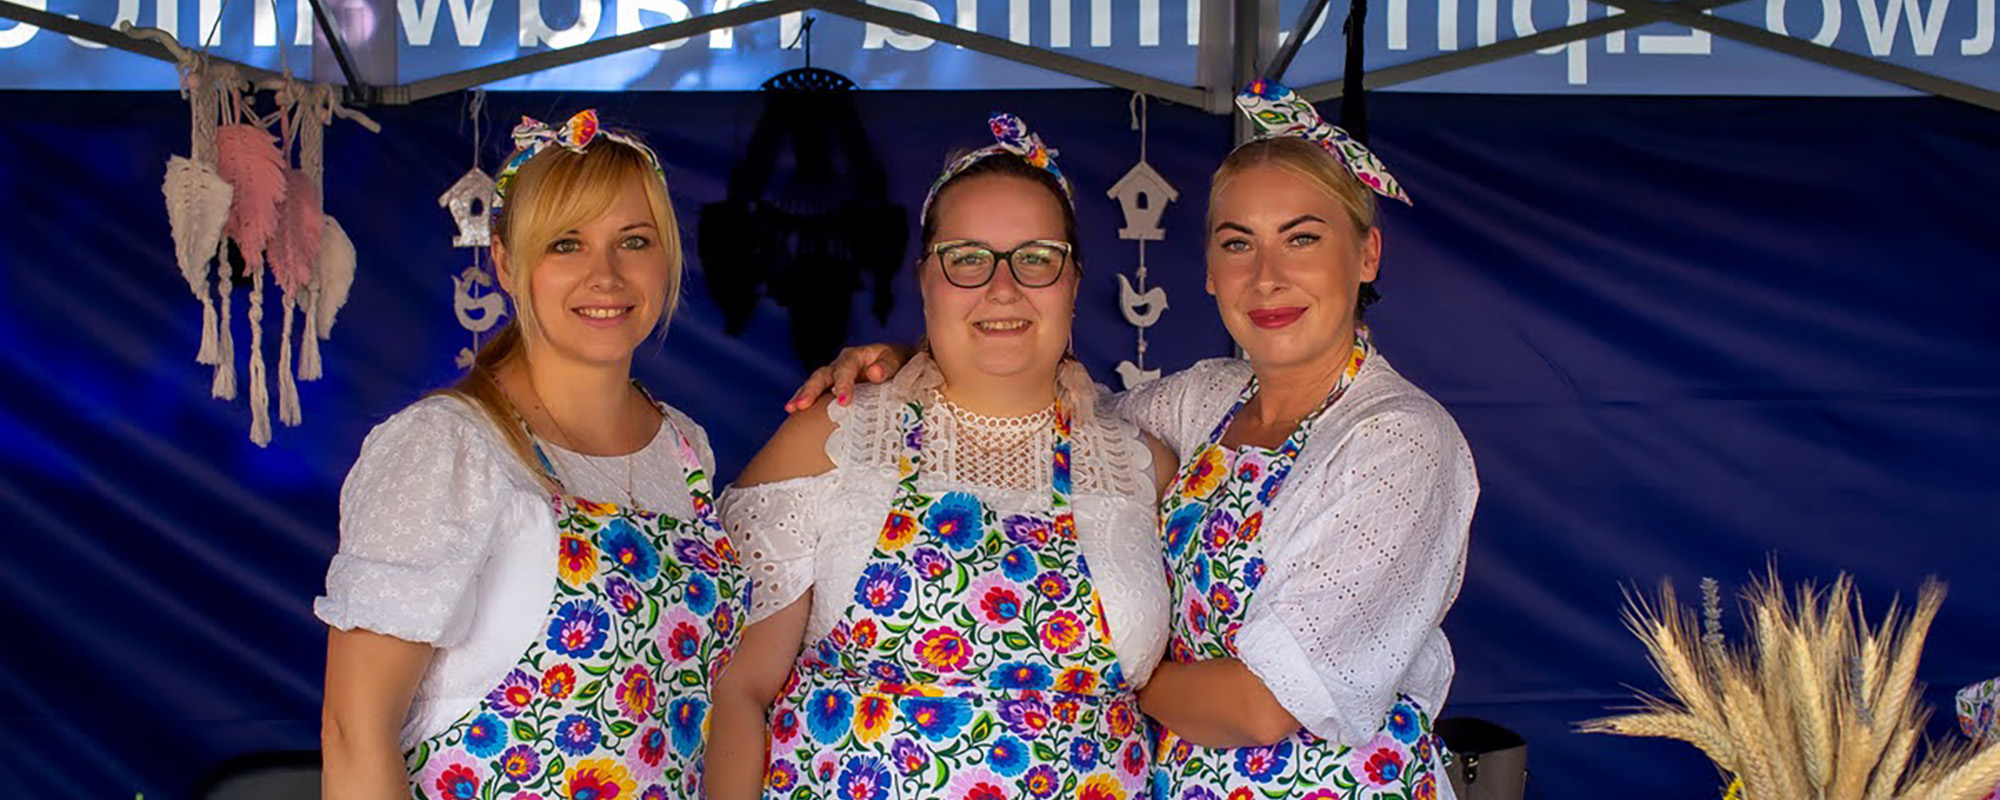 Polish women at Dozynki Harvest festival